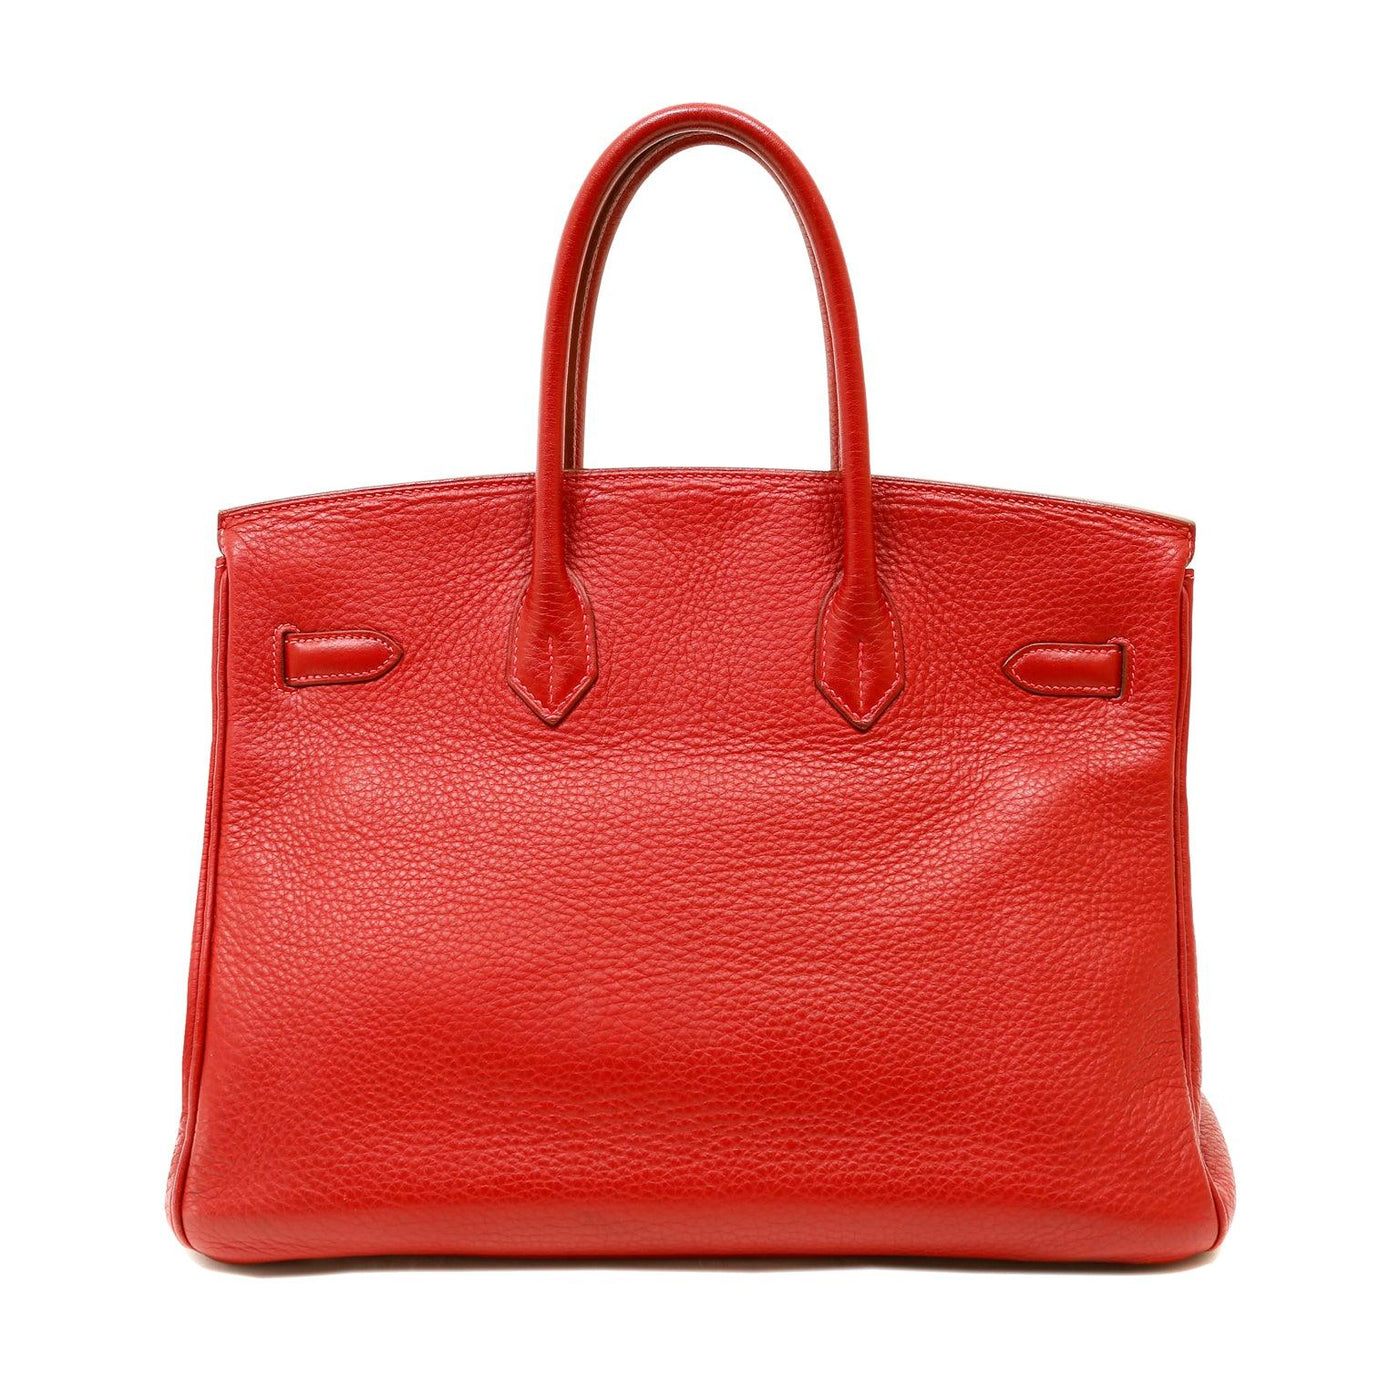 Hermès 35cm Vivid Red Togo Birkin w/ Palladium Hardware - Only Authentics